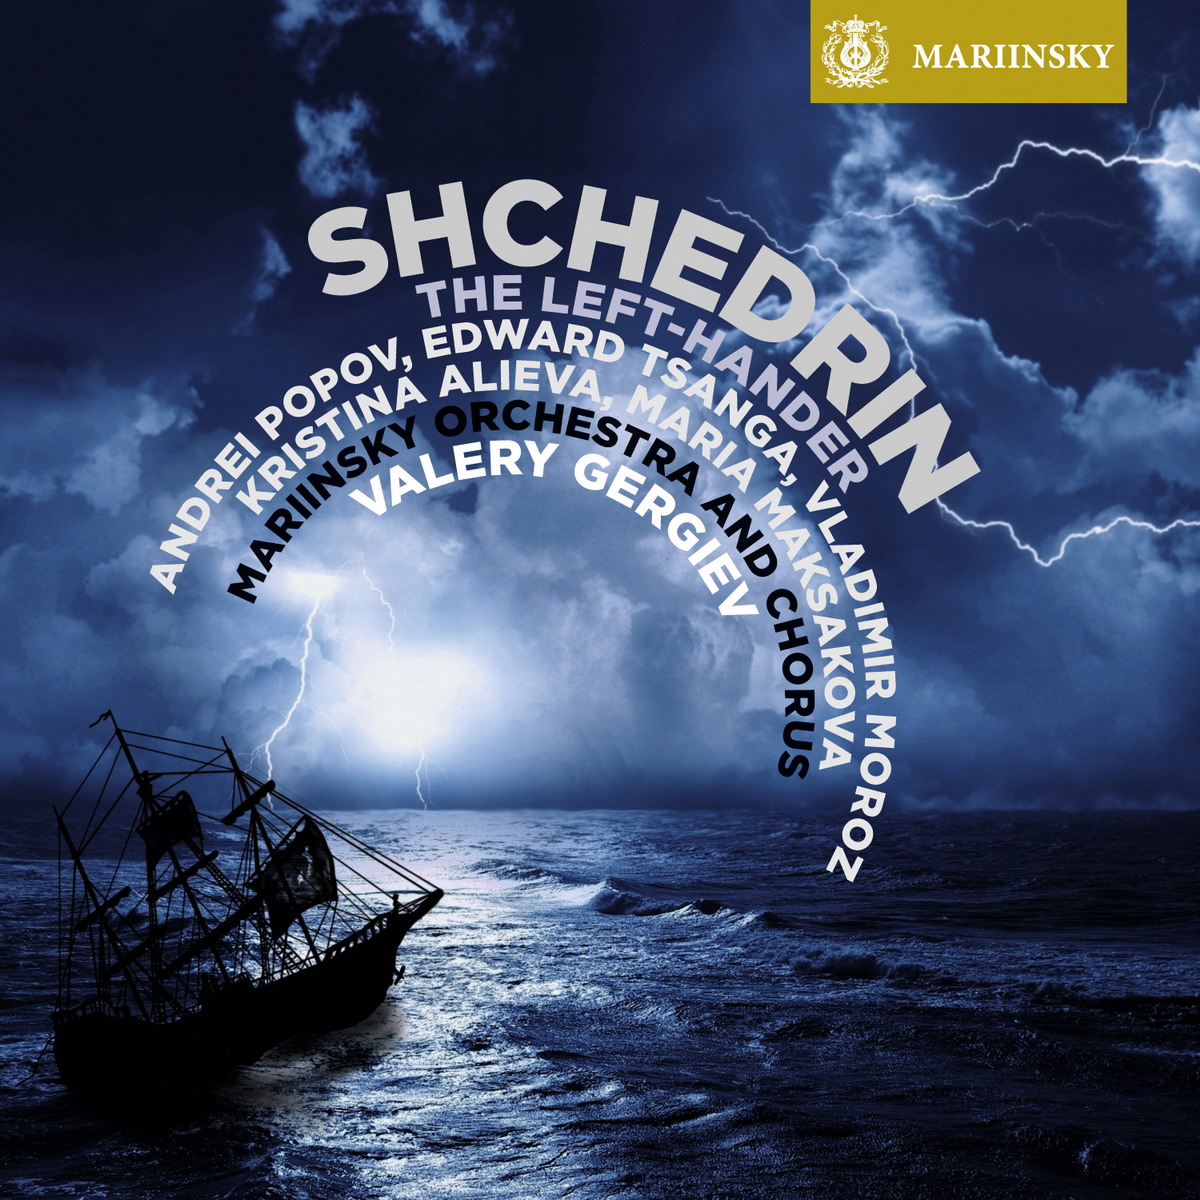 Valery Gergiev, Mariinsky Orchestra & Chorus – Shchedrin: The Left-Hander (2015) [Qobuz FLAC 24bit/96kHz]